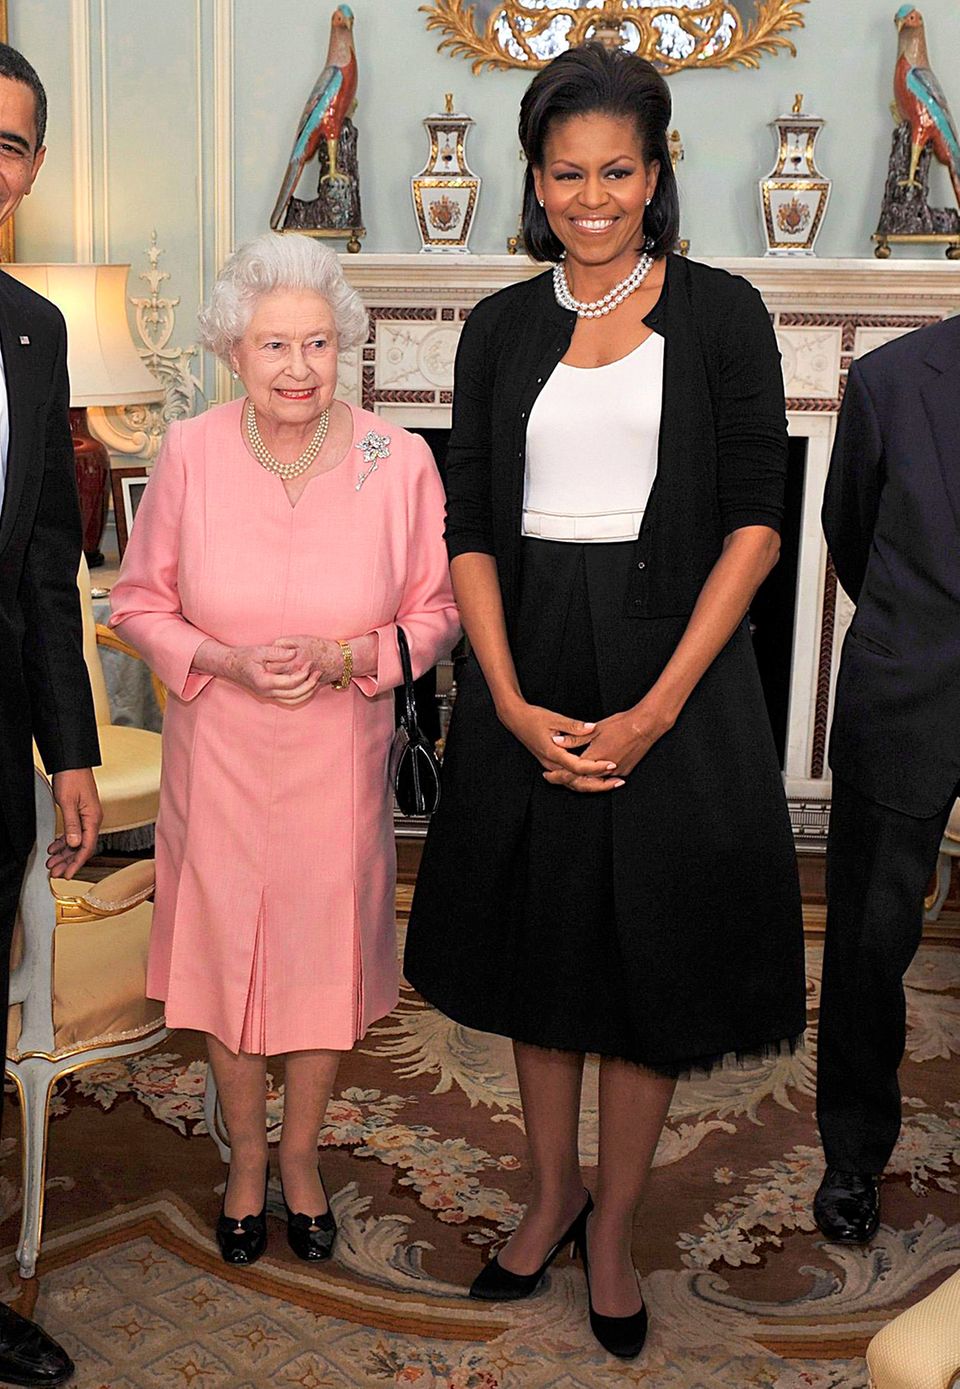 Zurückhaltend im schwarz-weißen Ensemble besucht Michelle Obama im April 2009 mit ihrem Mann Barack Queen Elizabeth im Buckingham Palast.